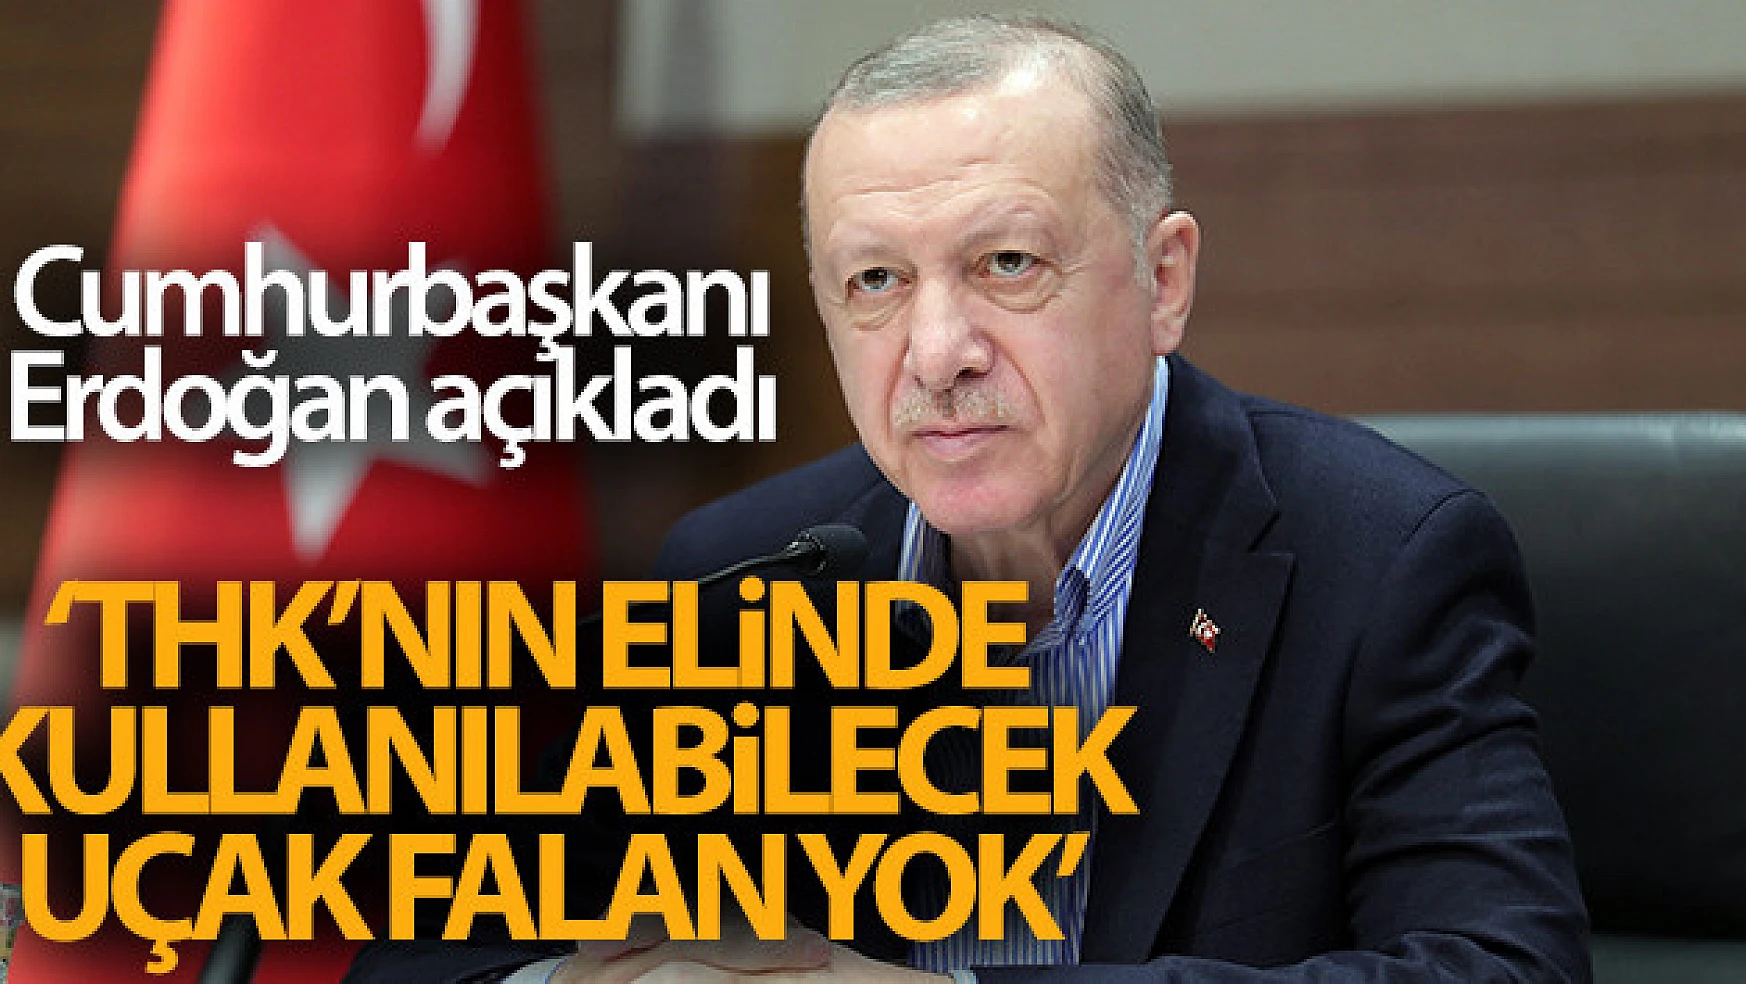 Cumhurbaşkanı Erdoğan: 'Türk Hava Kurumu'nun elinde, burada rahatlıkla kullanılabilecek uçak falan yok'